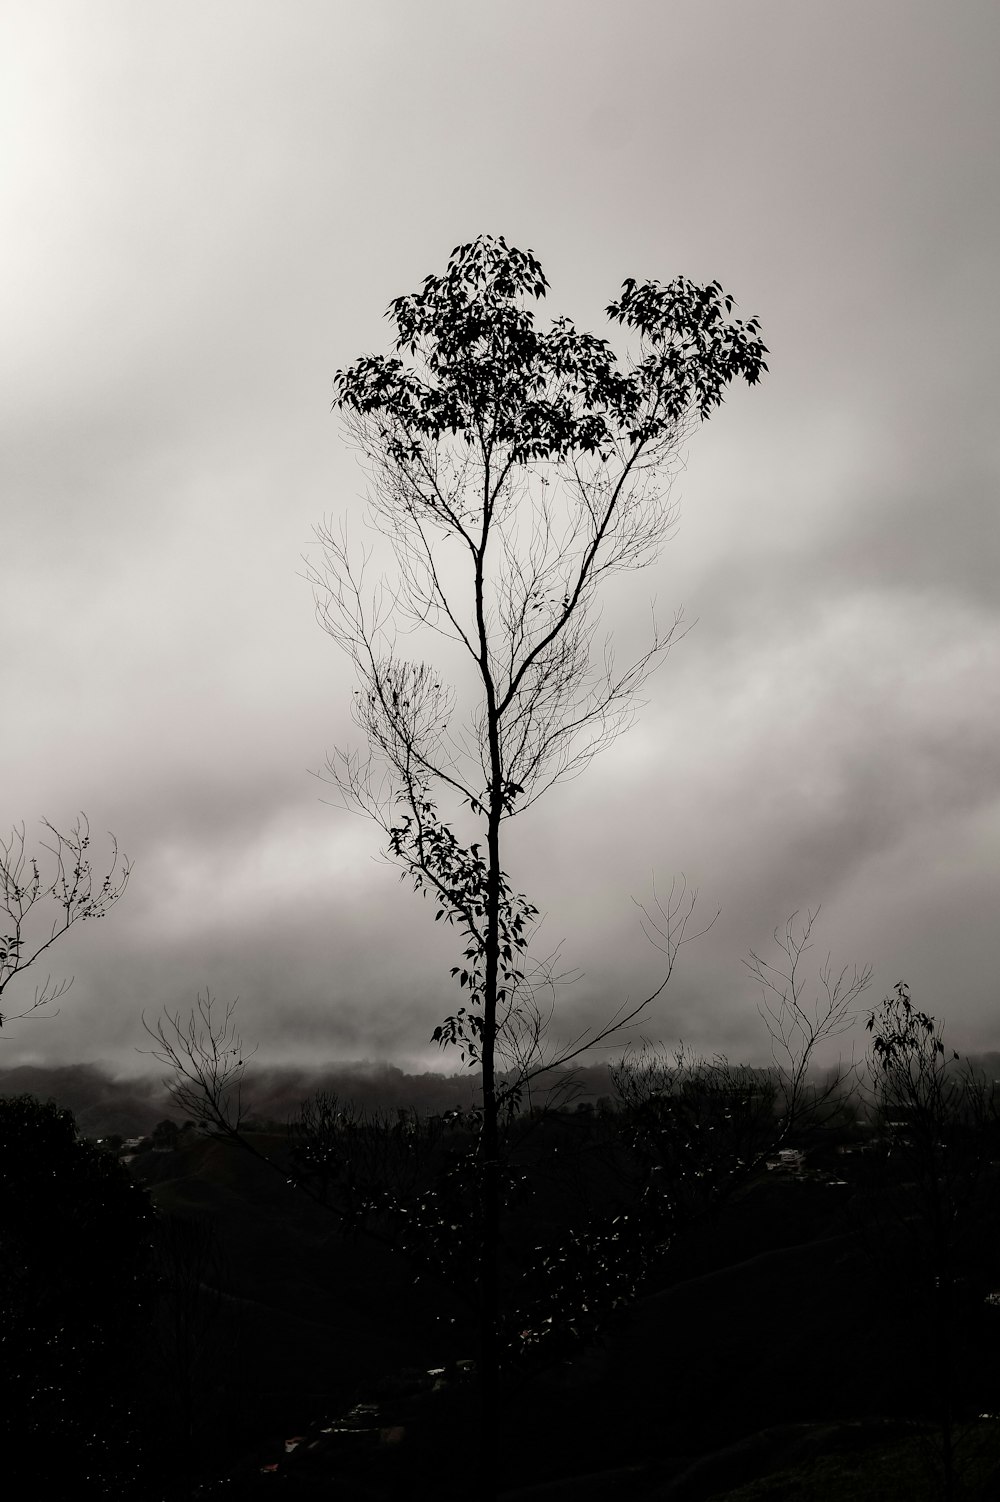 silueta de árboles bajo cielo nublado durante el día